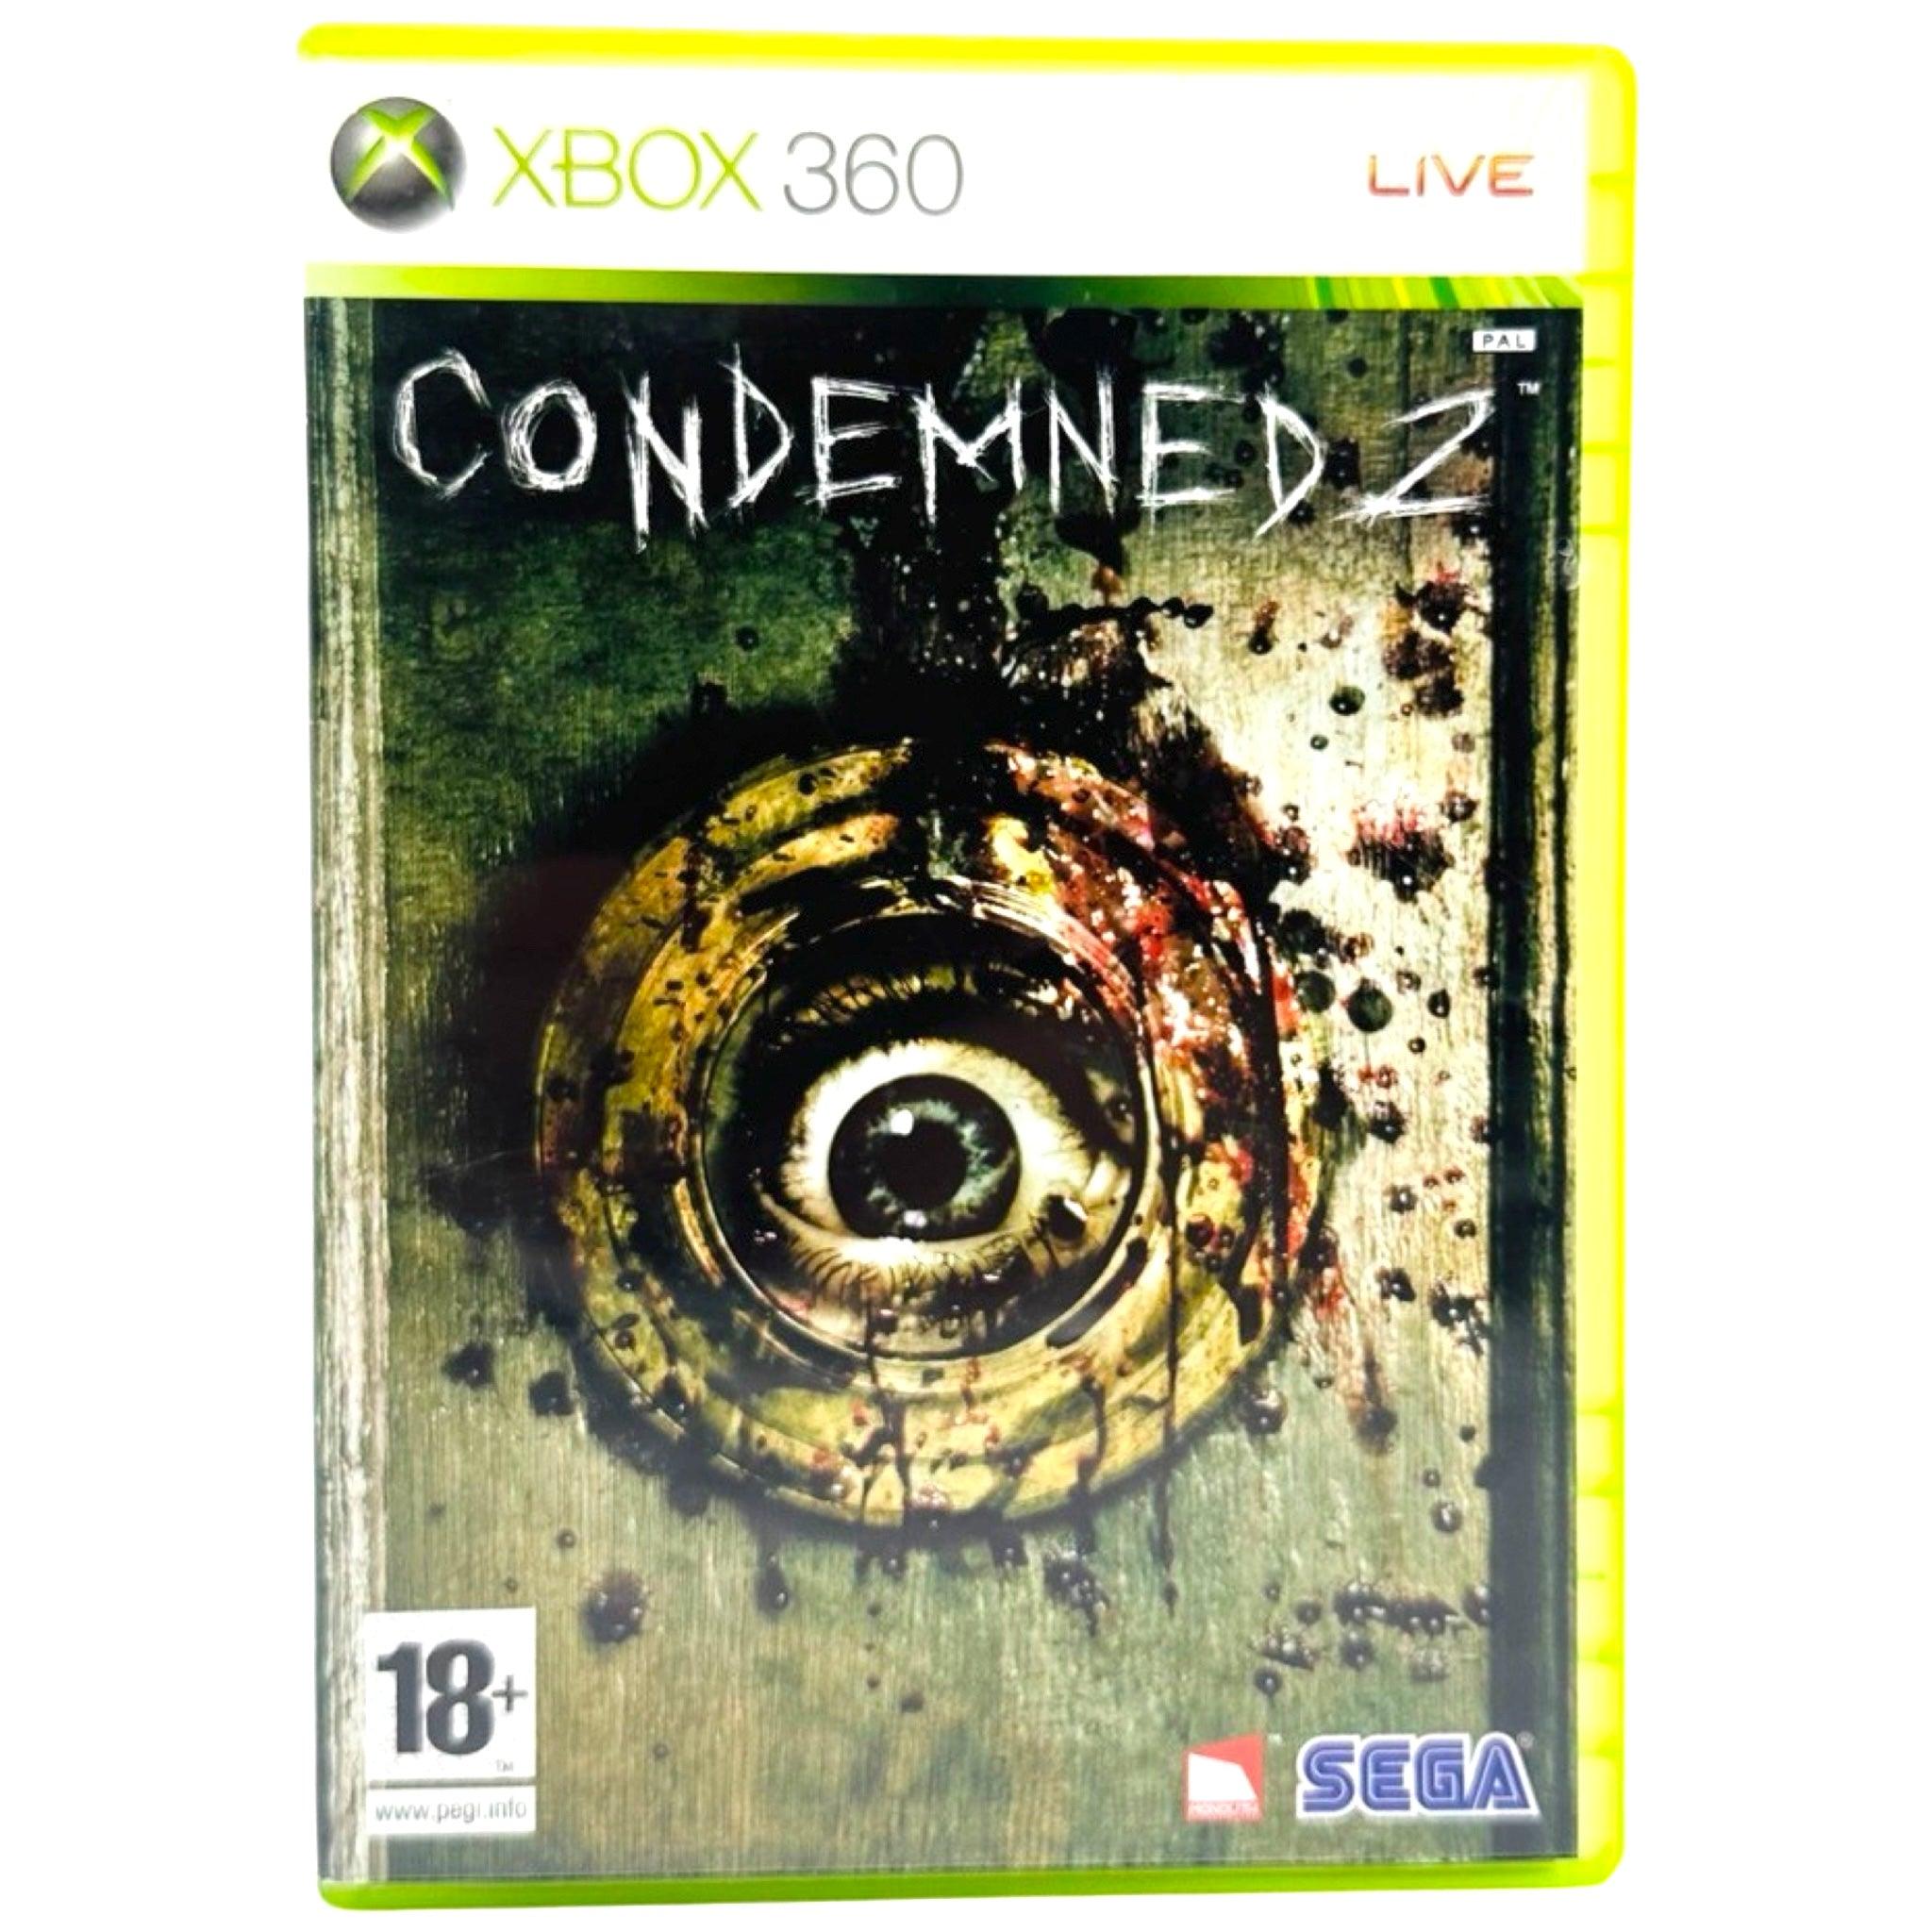 Xbox 360: Condemned 2 - RetroGaming.no